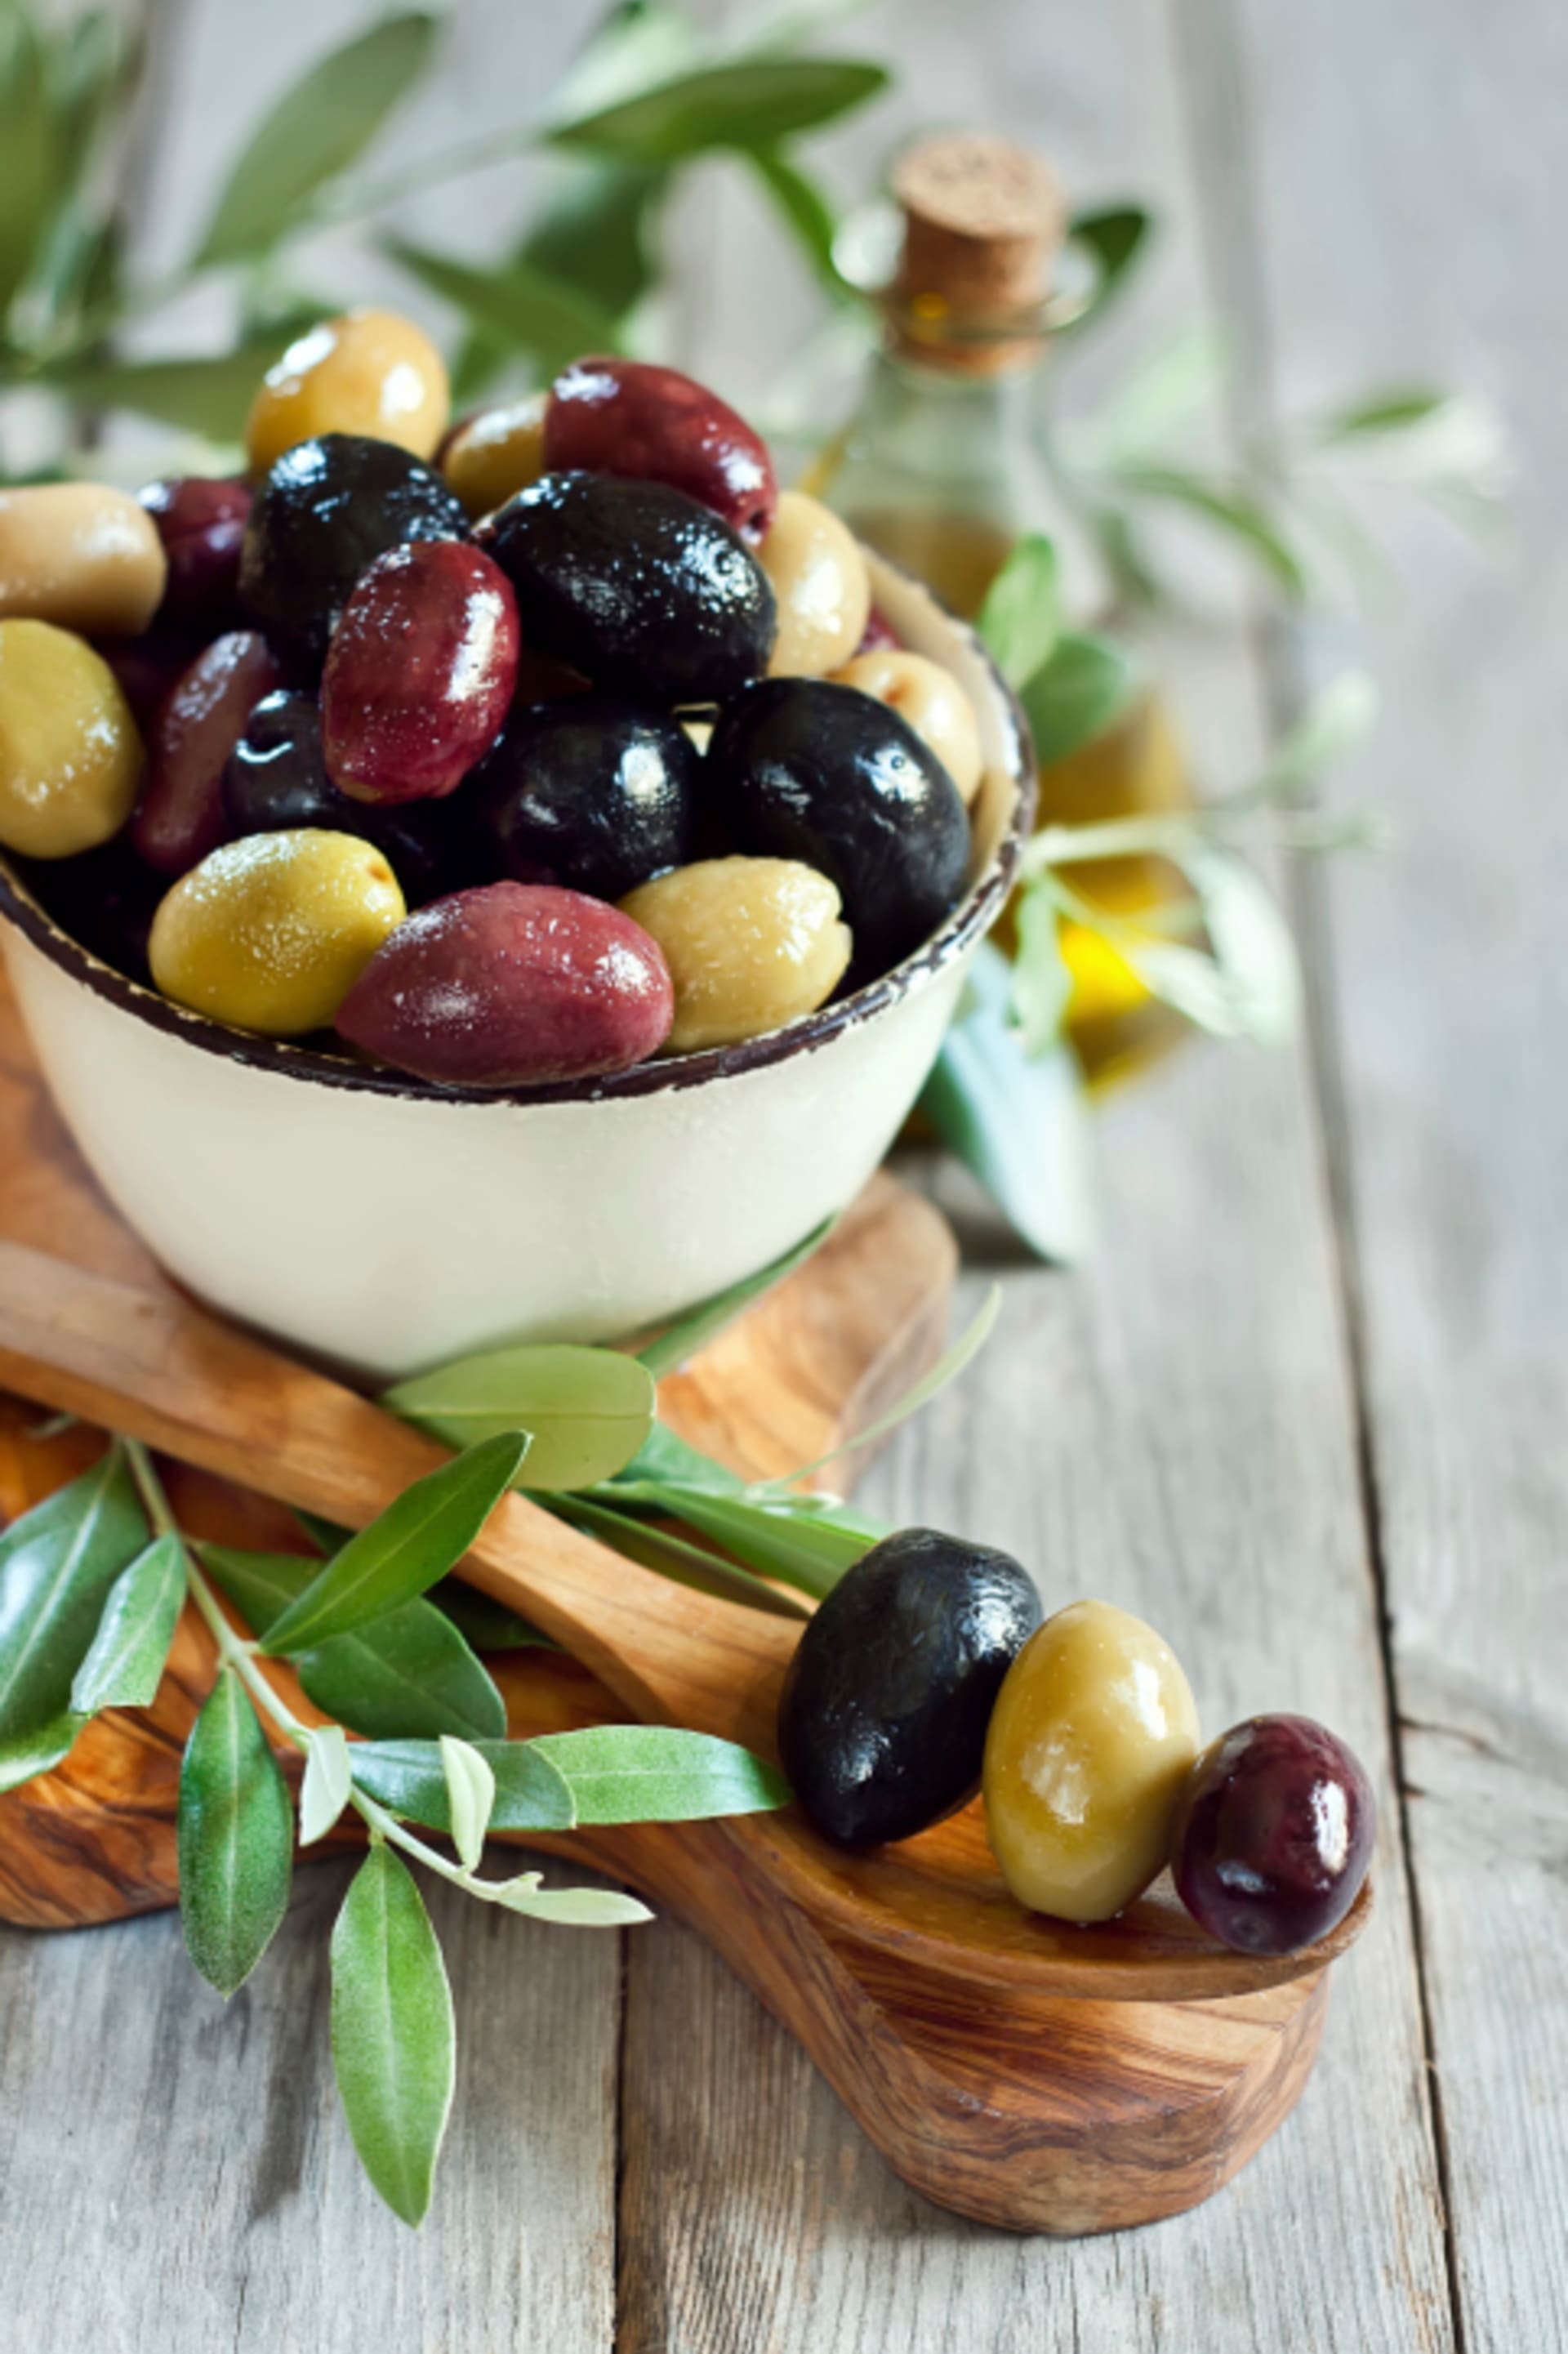 Olivy jsou zdrojem zdravých tuků.